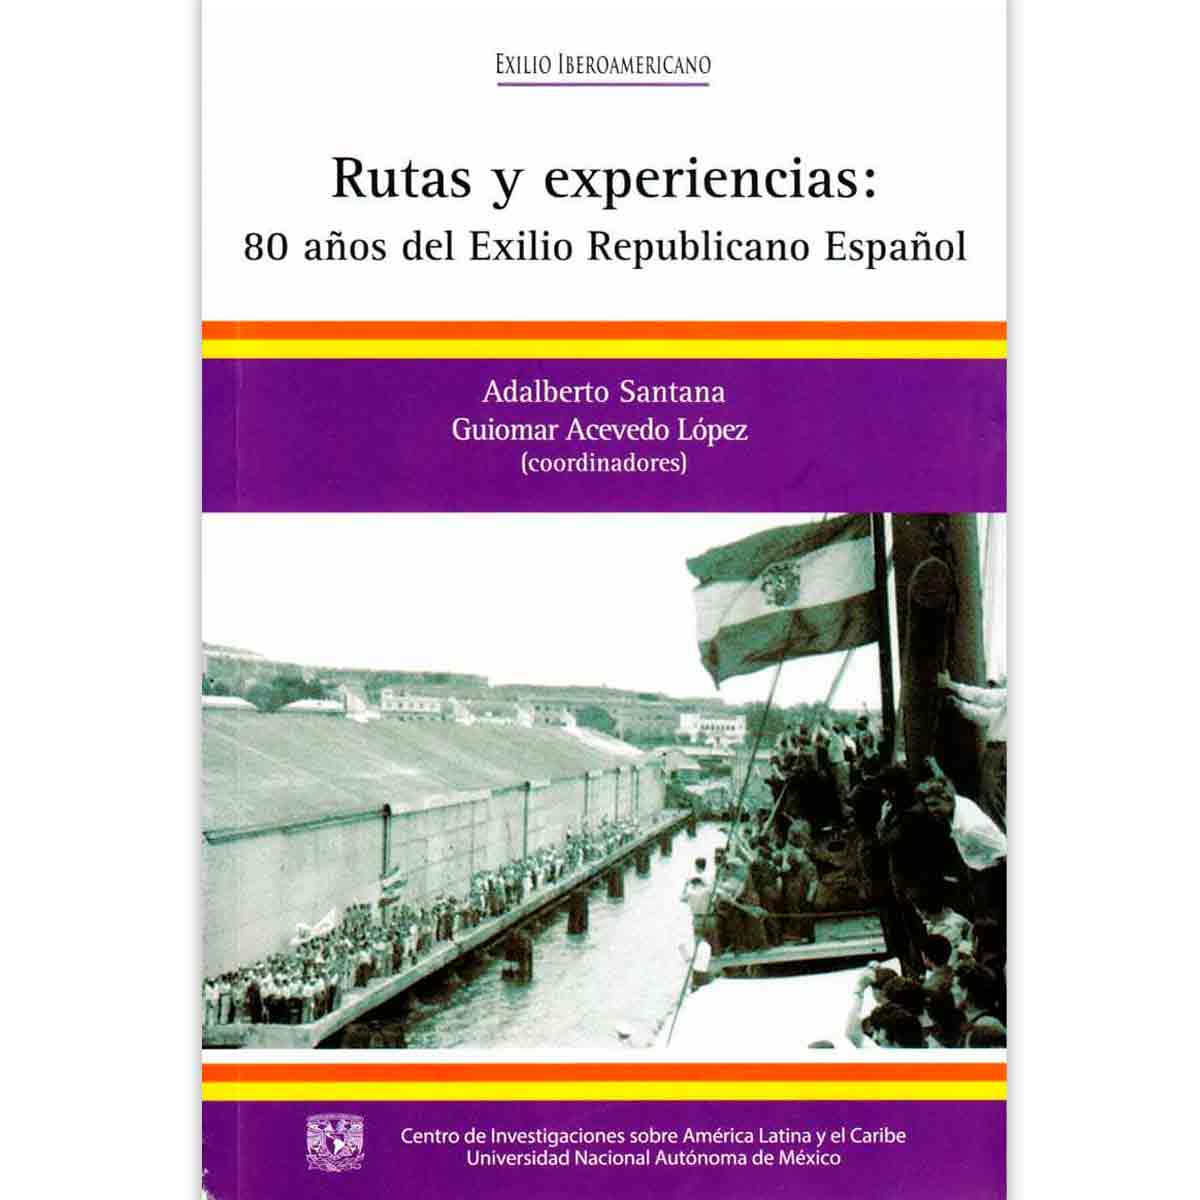 RUTAS Y EXPERIENCIAS: 80 AÑOS DEL EXILIO REPUBLICANO ESPAÑOL